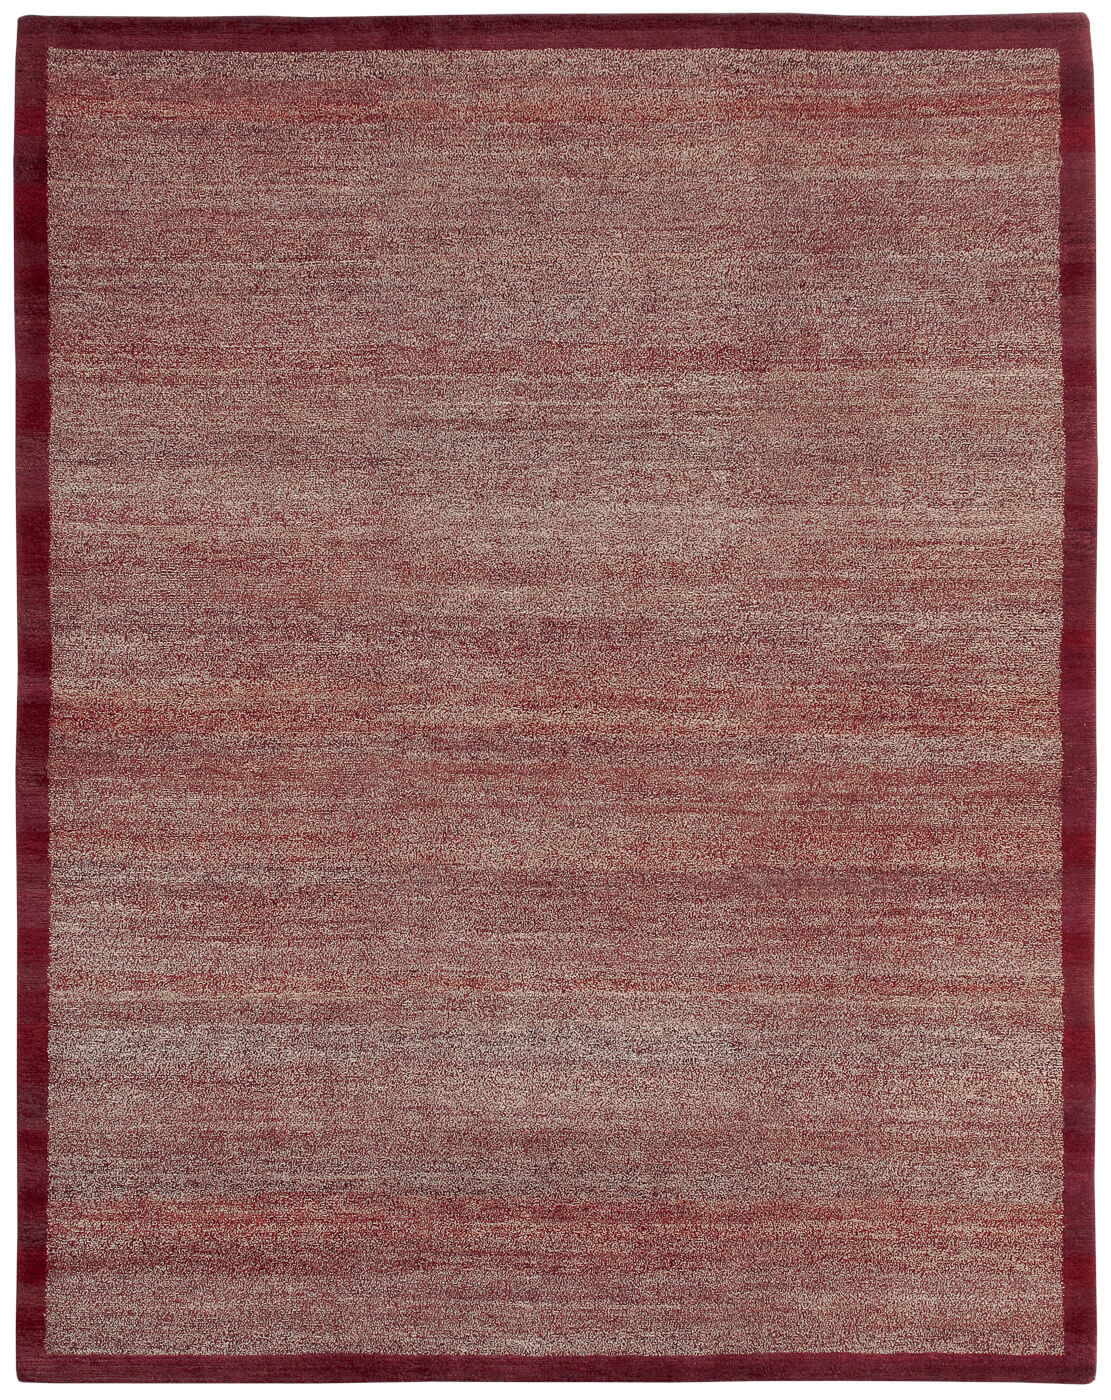 Border Dark Red Luxury Hand-woven Rug ☞ Size: 250 x 300 cm